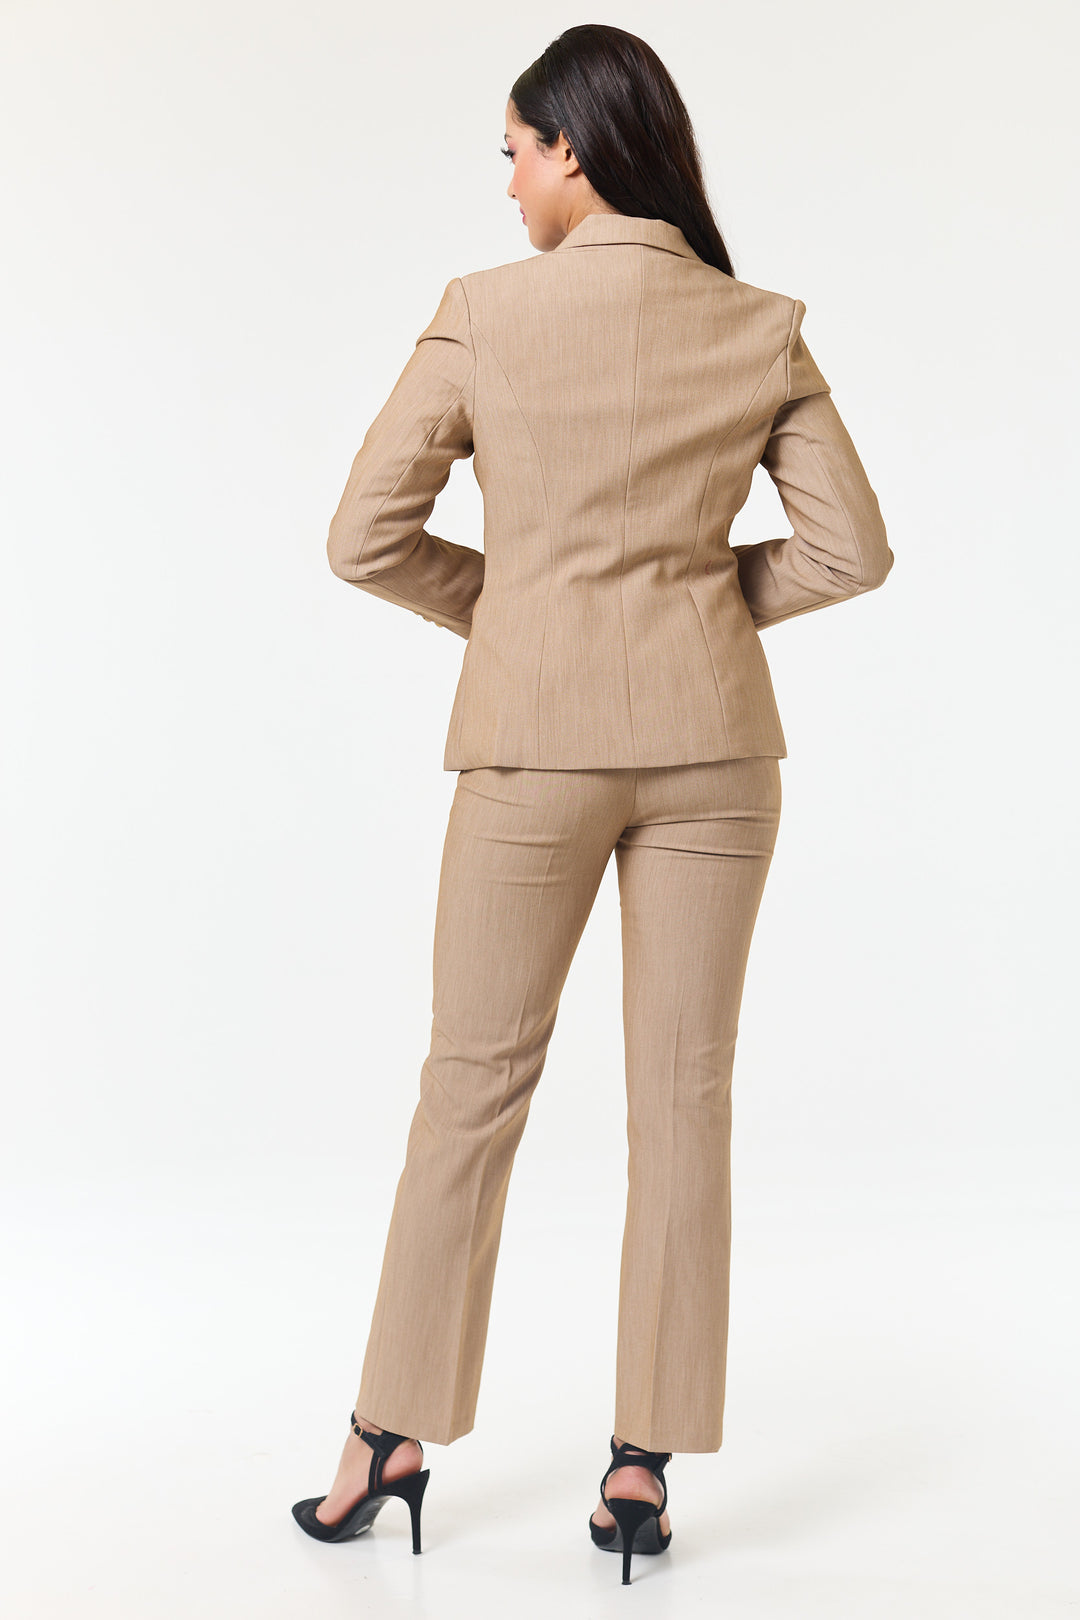 Beige 3-Piece Trouser Suit - Shop Women's Business Suits